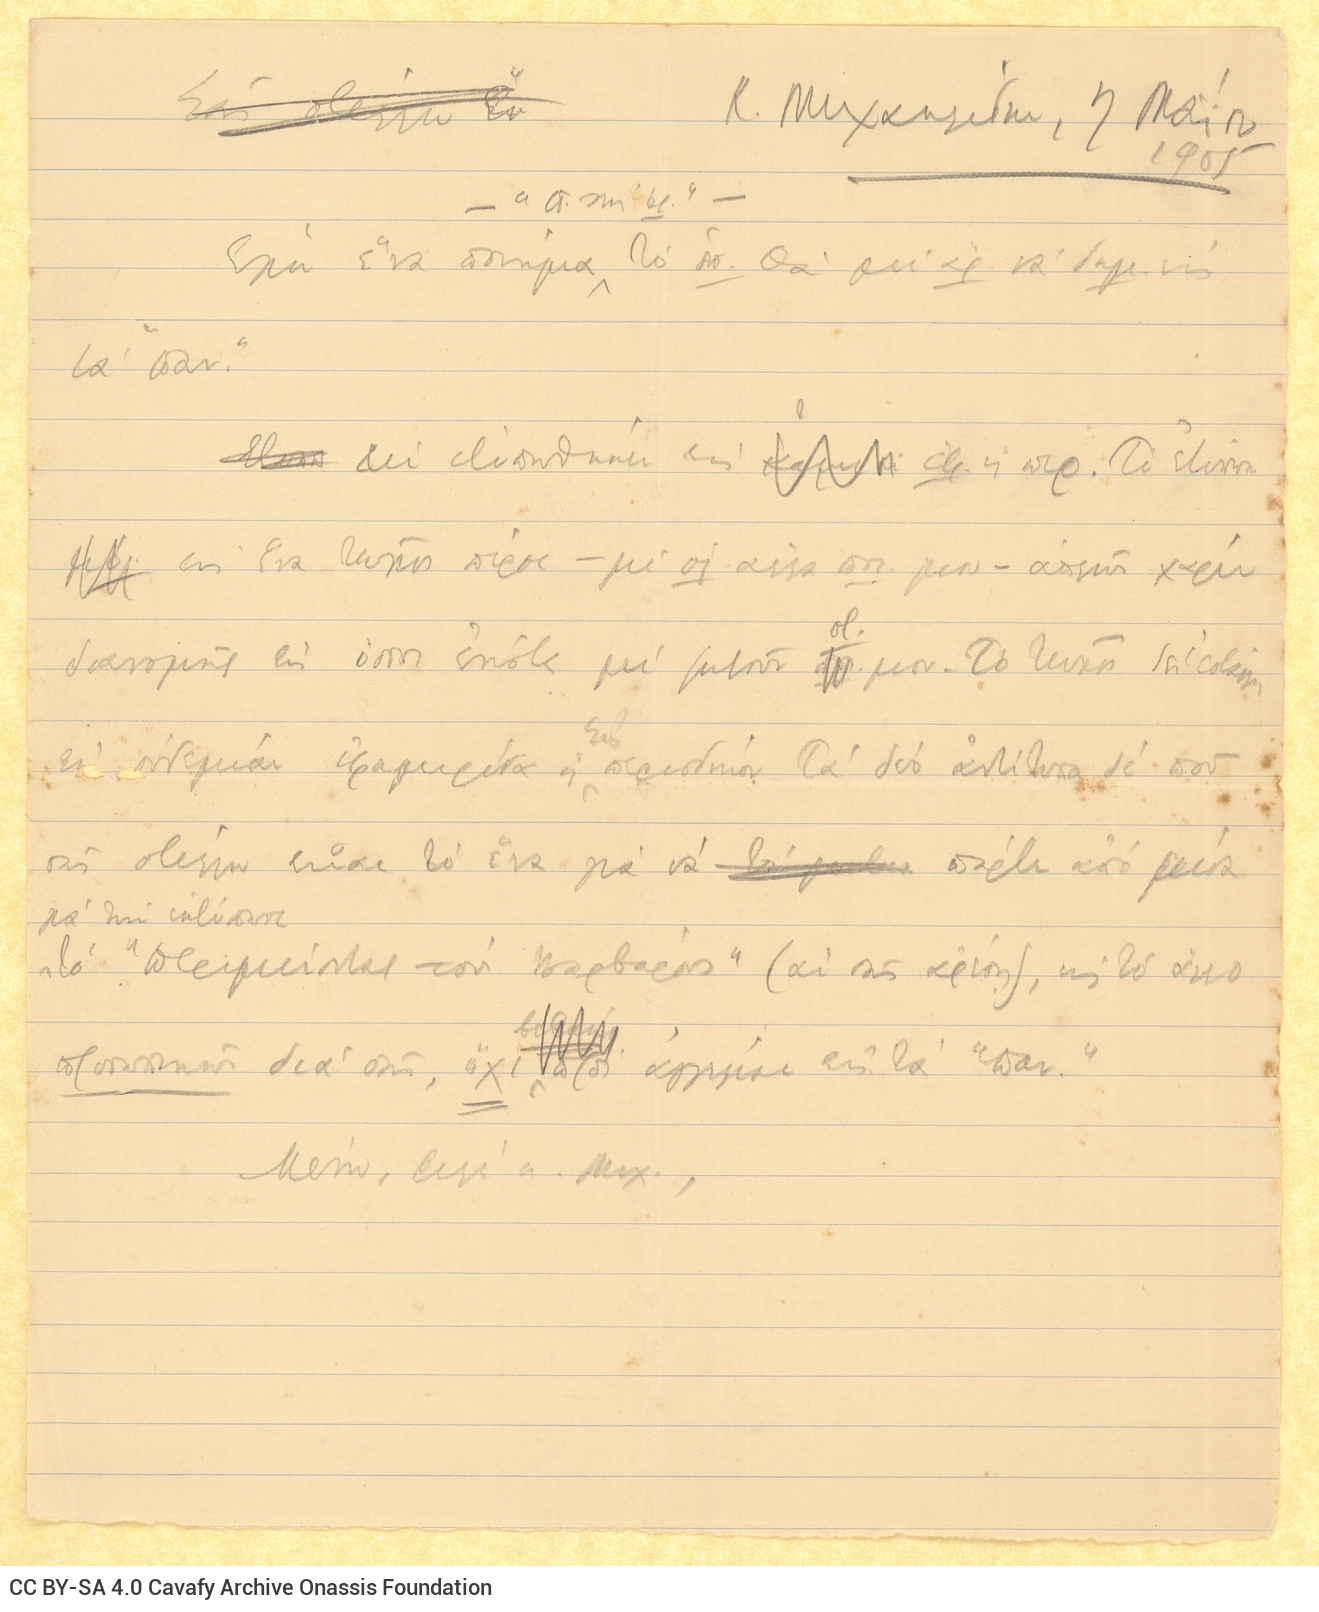 Χειρόγραφο σχέδιο επιστολής του Καβάφη προς τον Κίμωνα Μιχαηλίδη. Γ�